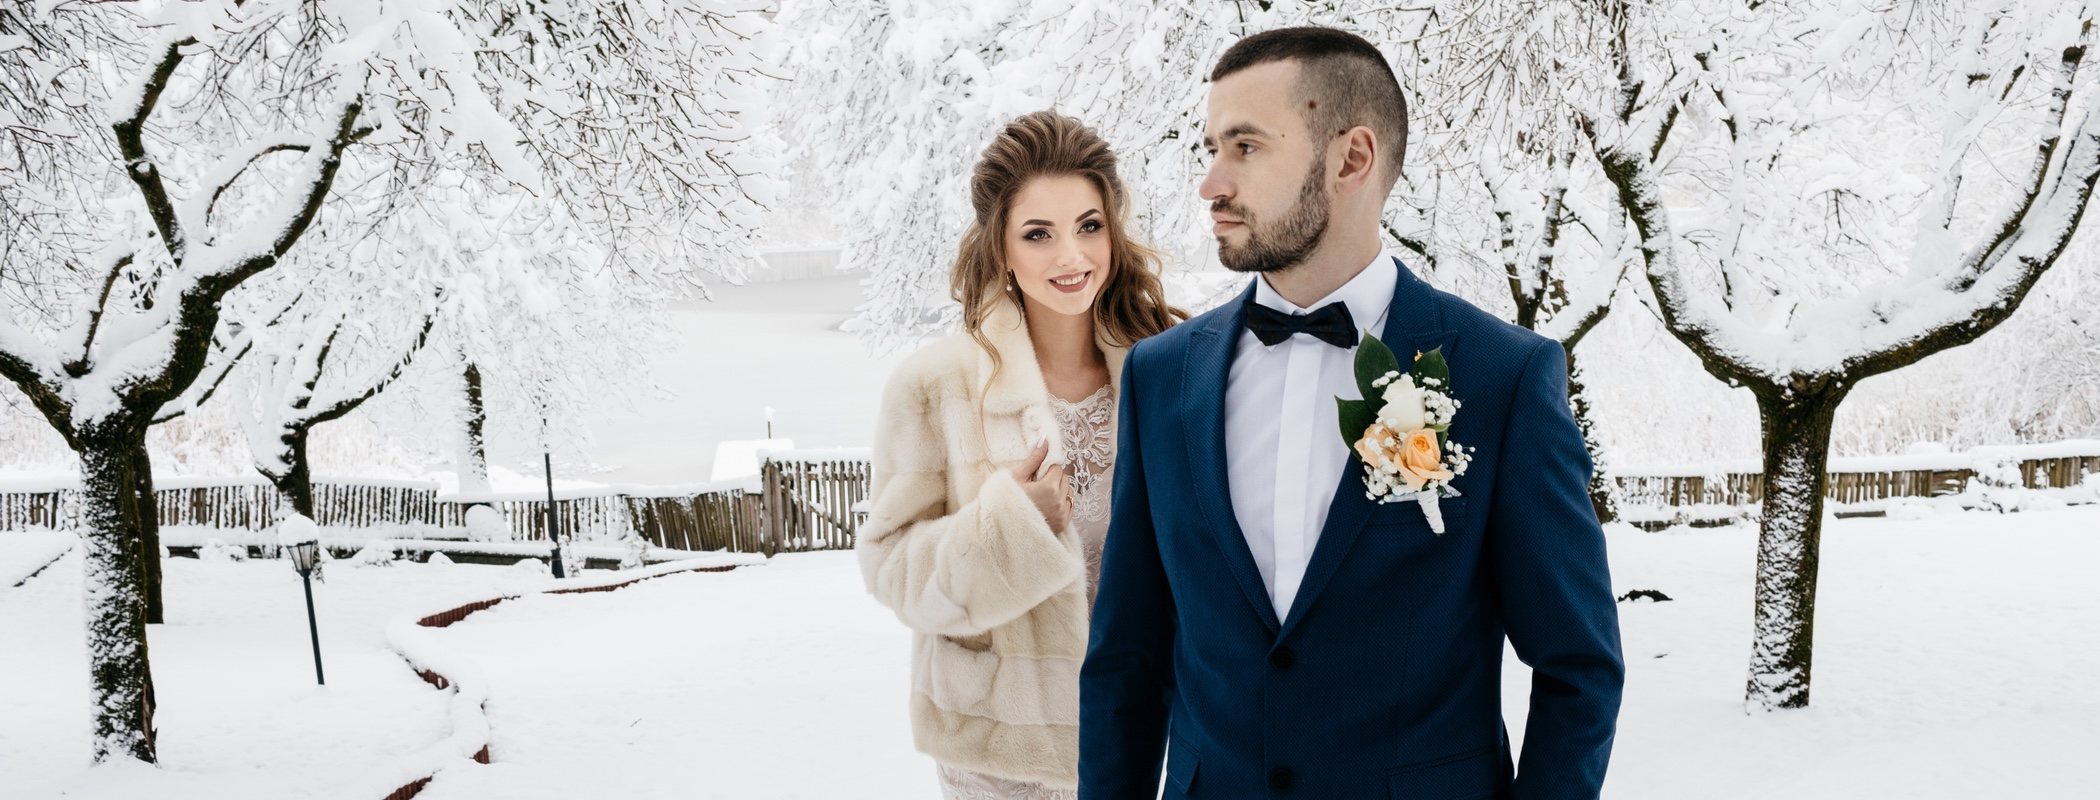 Celebrar una boda en invierno: todo lo que debes saber